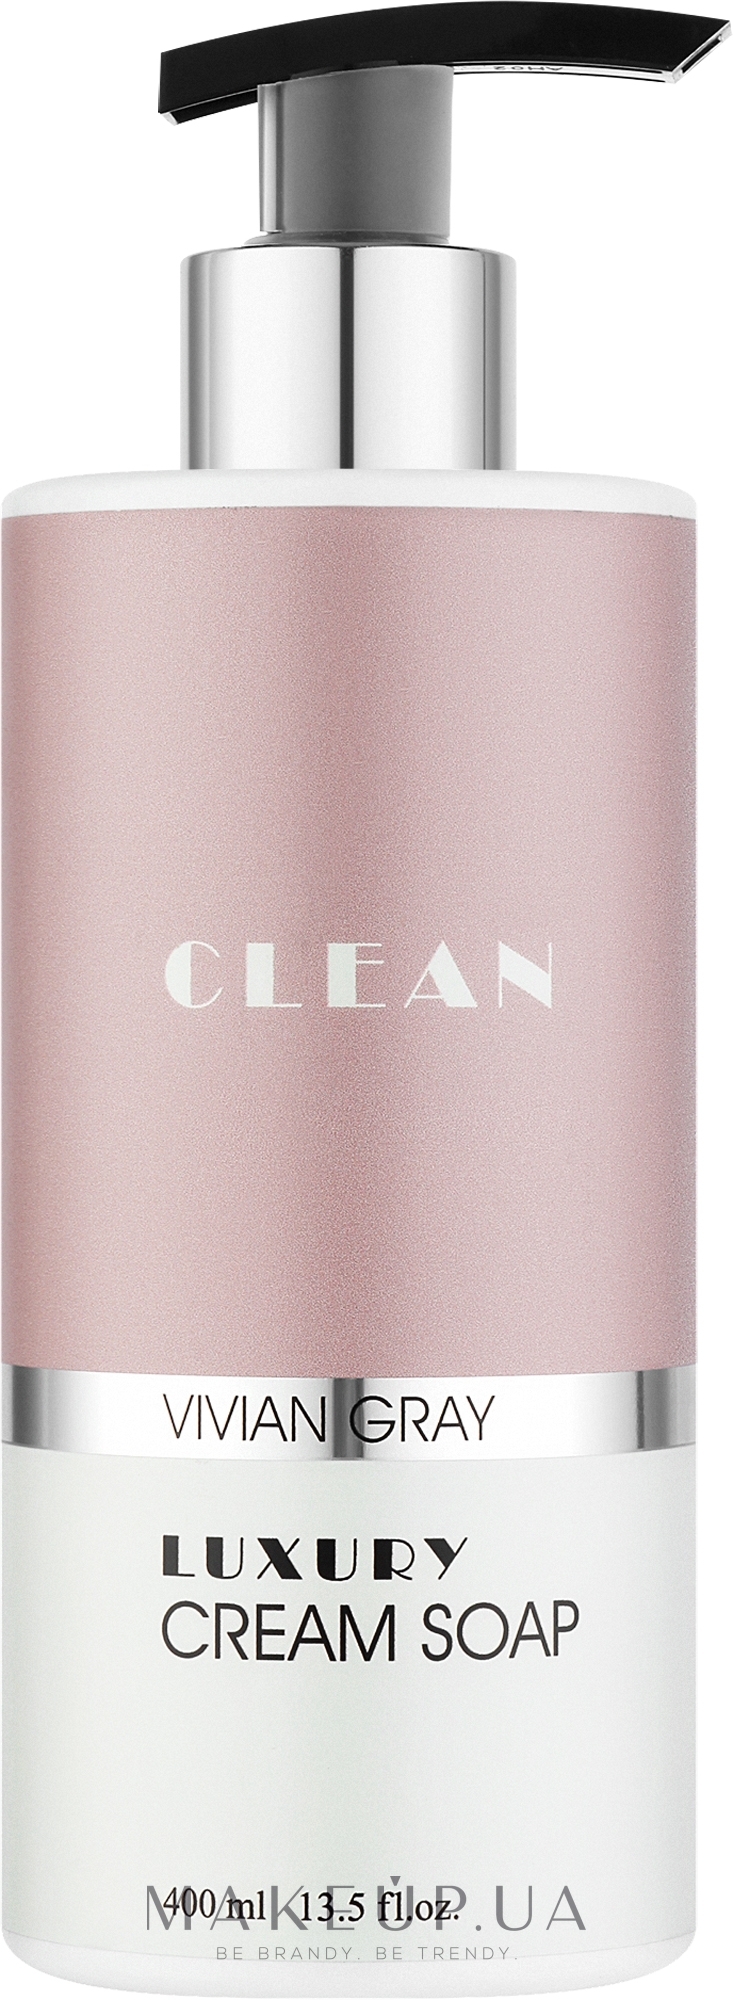 Крем-мило для рук - Vivian Gray Clean Luxury Cream Soap — фото 400ml